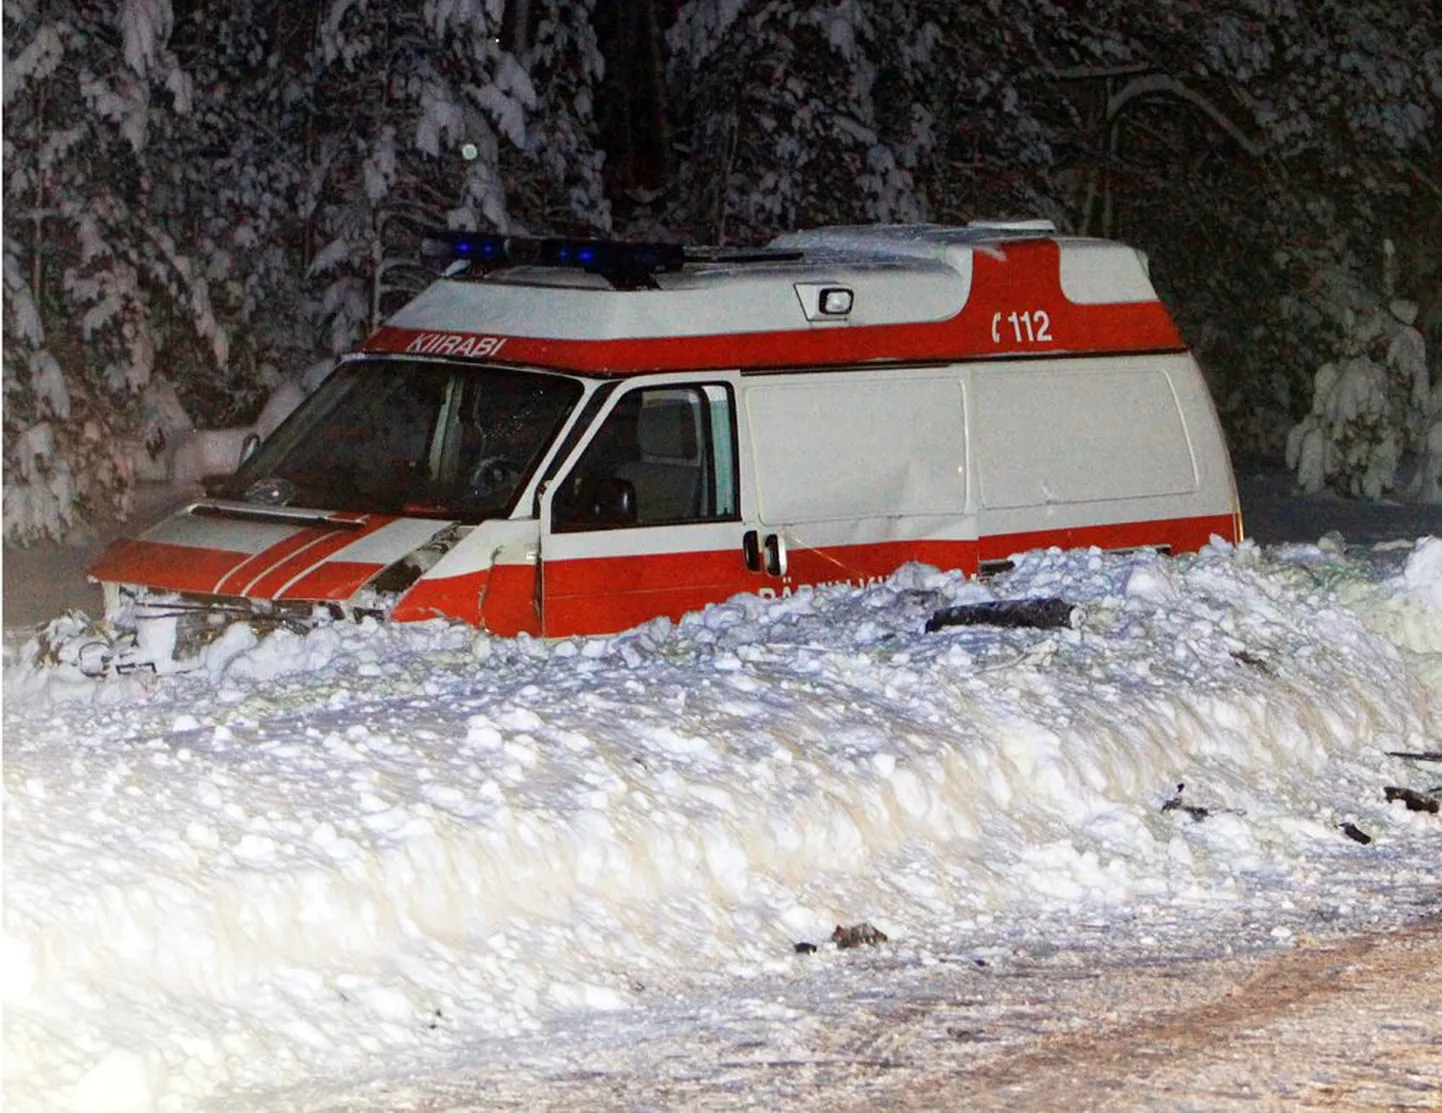 Ainus lumeoludest tingitud raske õnnetus toimus Pärnumaal, kus kiirabi sattus libedal teel valesid sõiduvõtteid kasutanud sõiduauto juhi tõttu avariisse, milles hukkus sõidukis olnud väikelaps. Kiirabil nii õnnetult ei läinud.